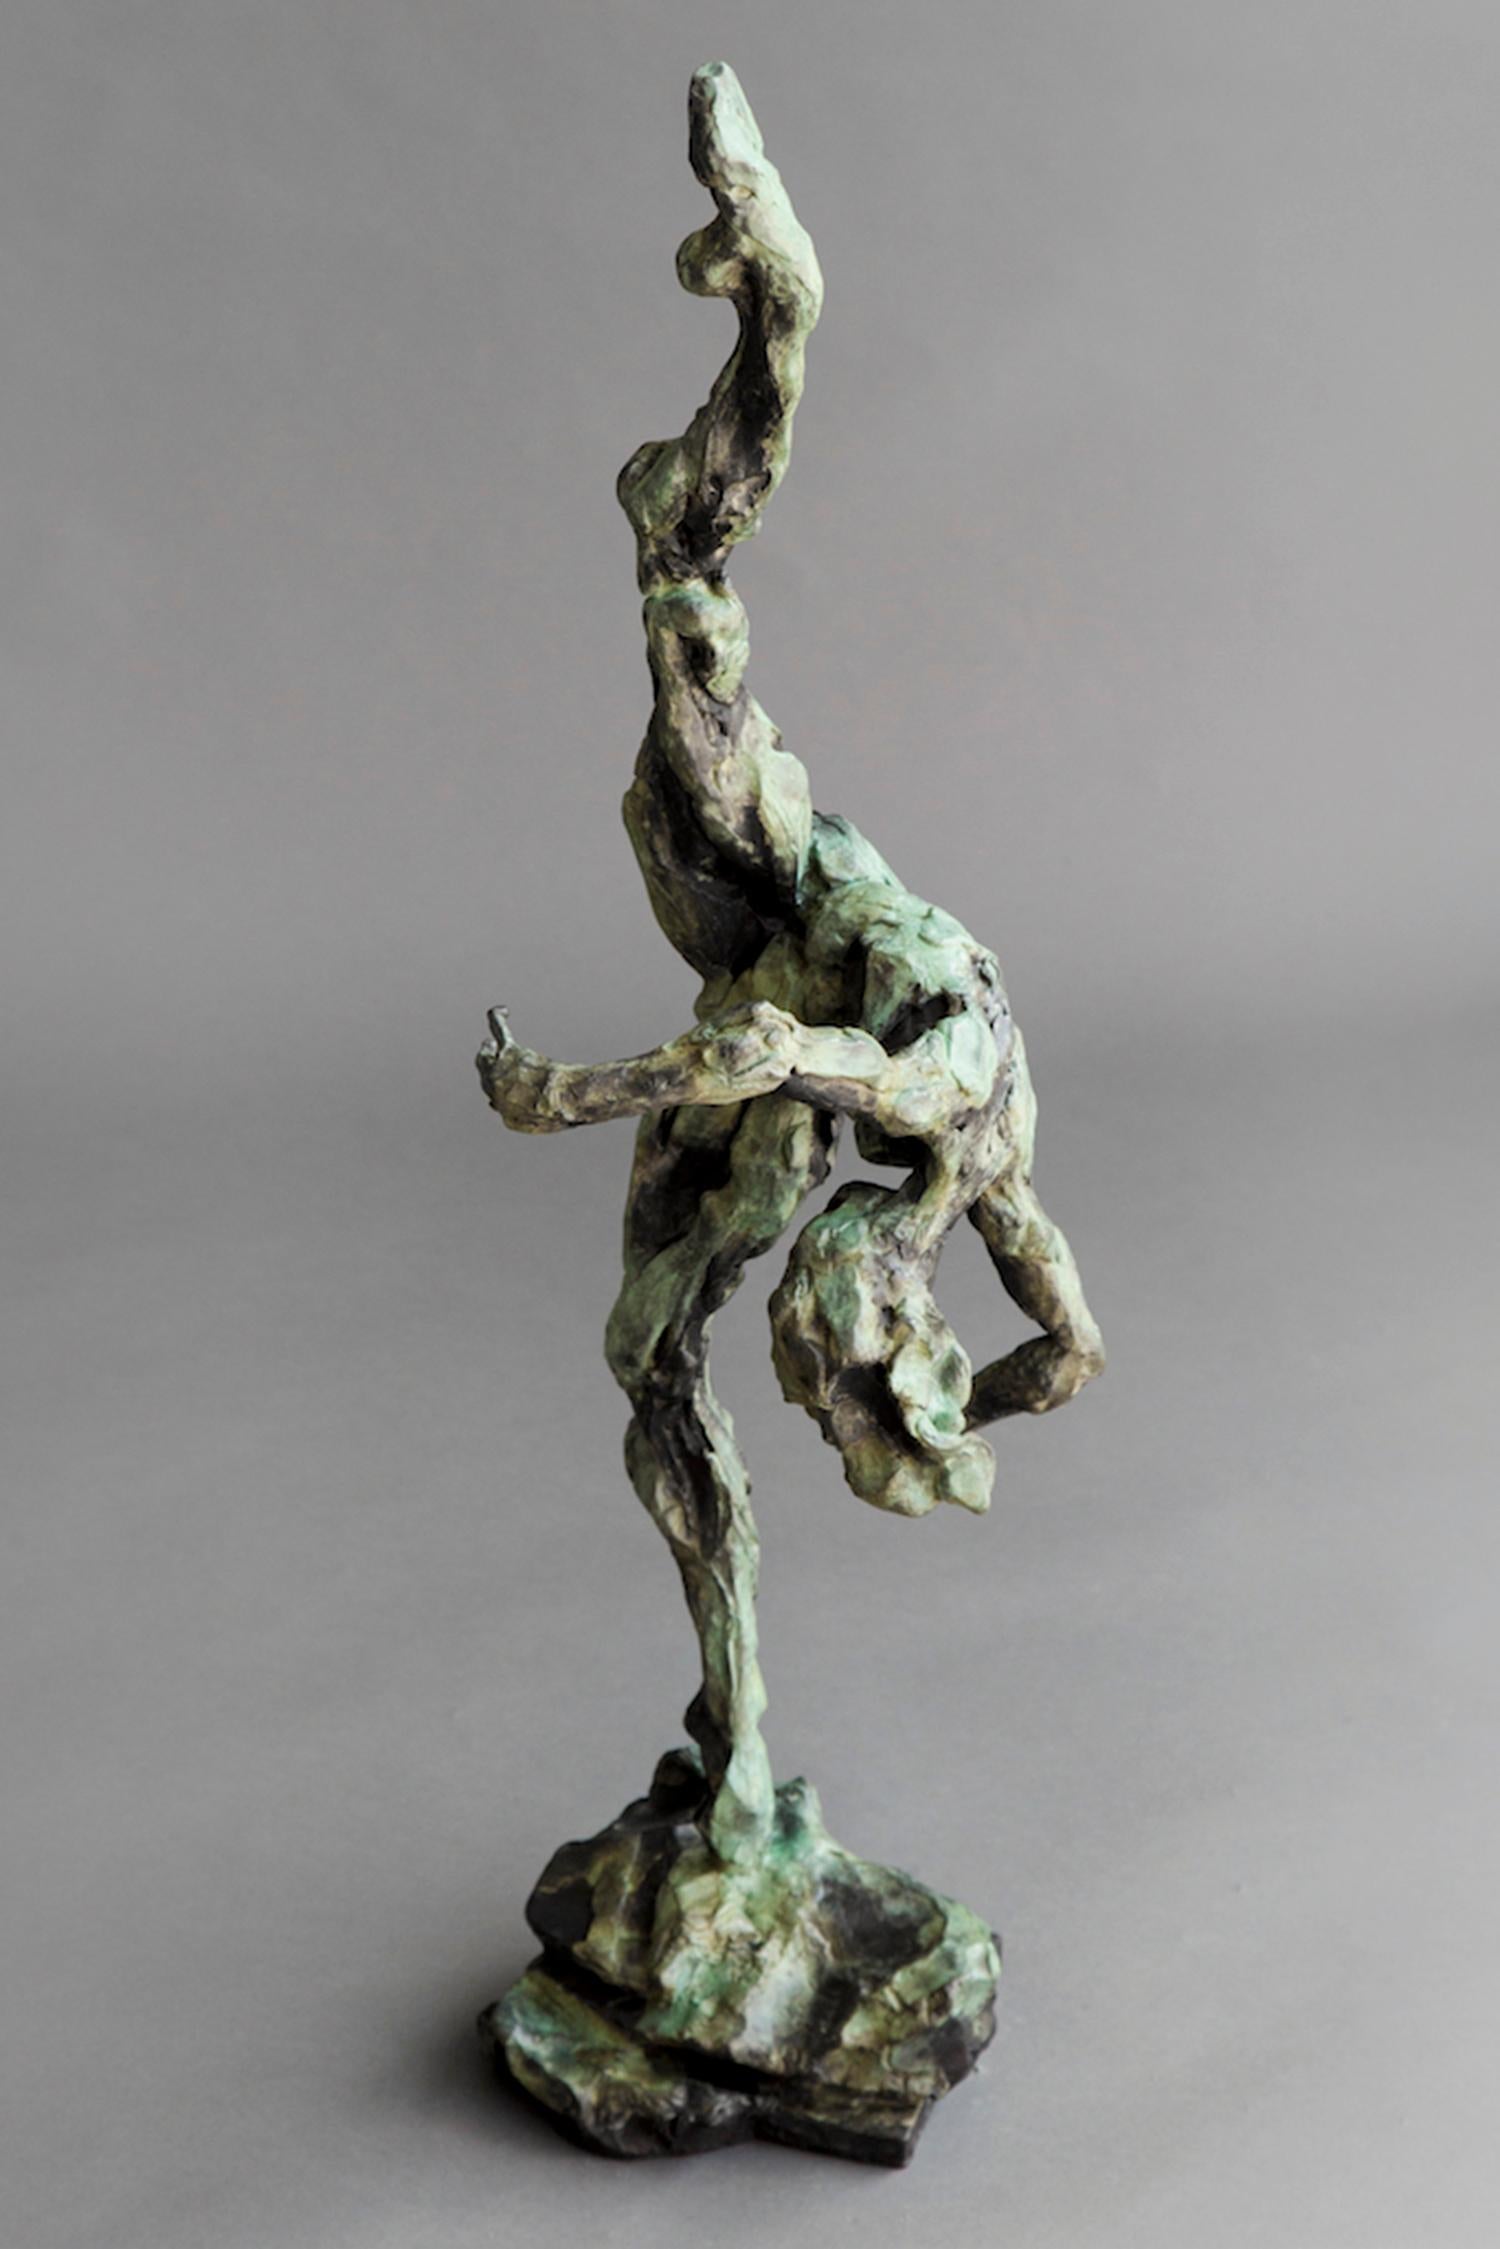 Femme danseuse nue - Sans titre n° 51 1/8 - statuette en bronze patiné représentant une femme nue - Sculpture de Richard Tosczak